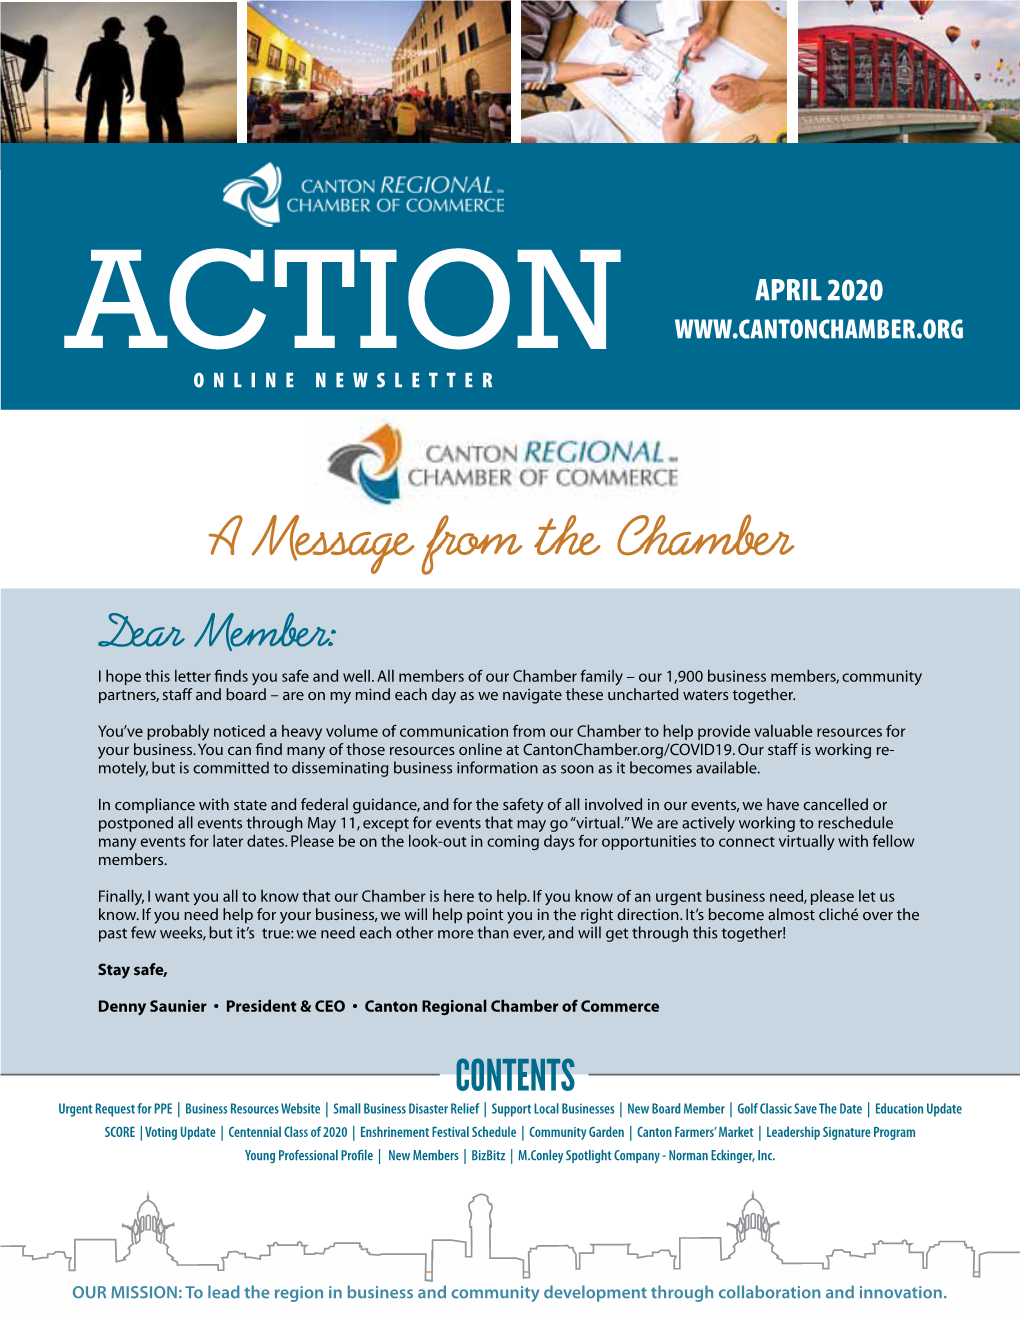 April 2020 Action Online Newsletter